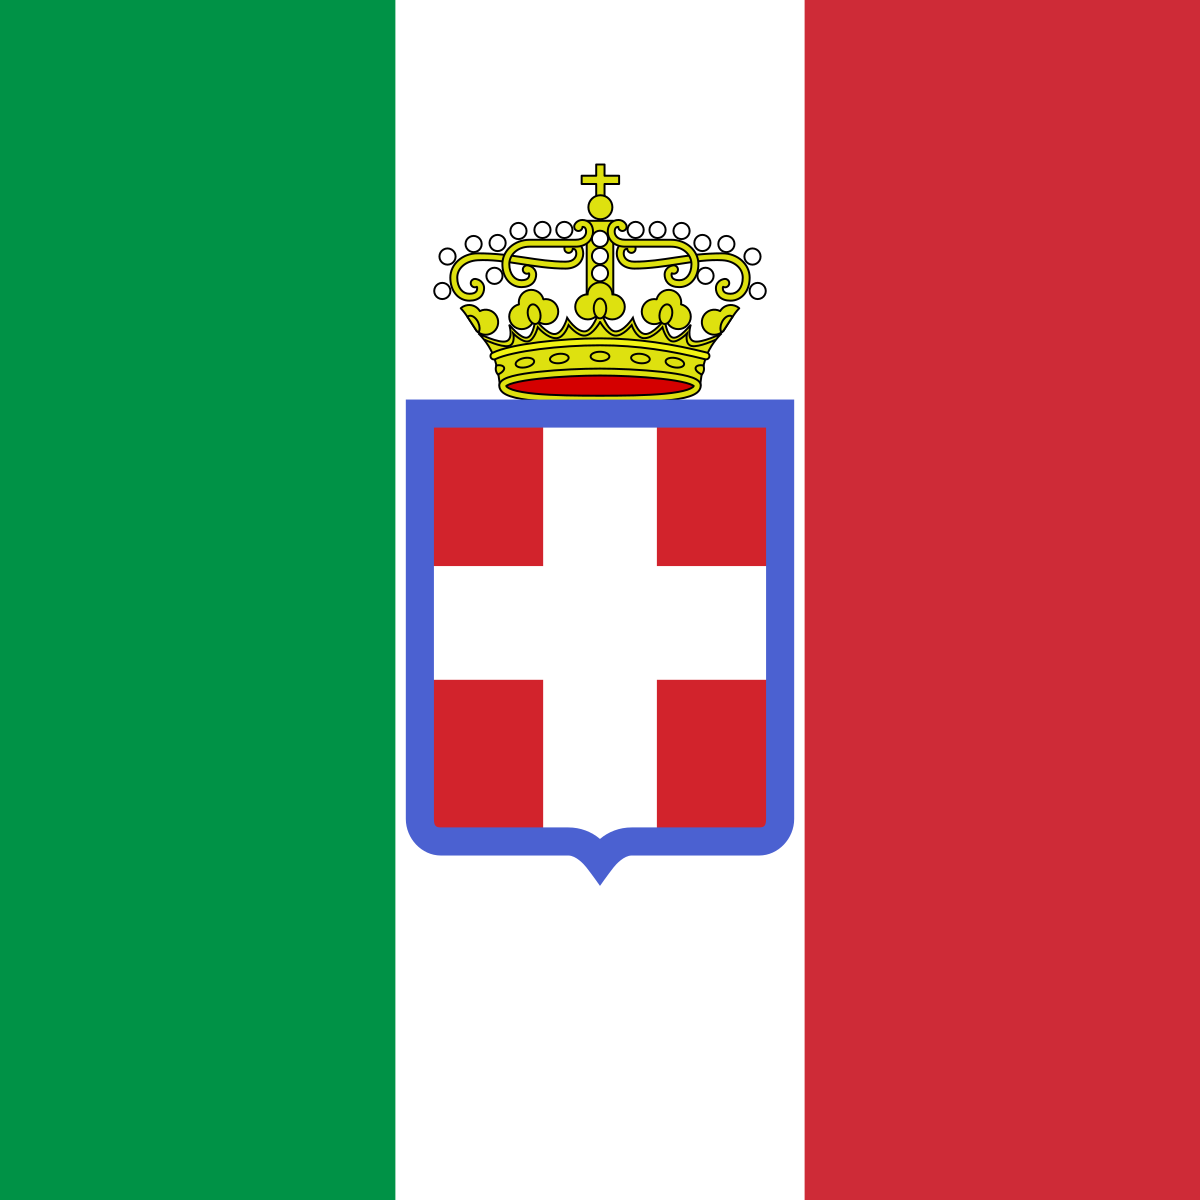 Royal Italian Army during World War II - Wikipedia